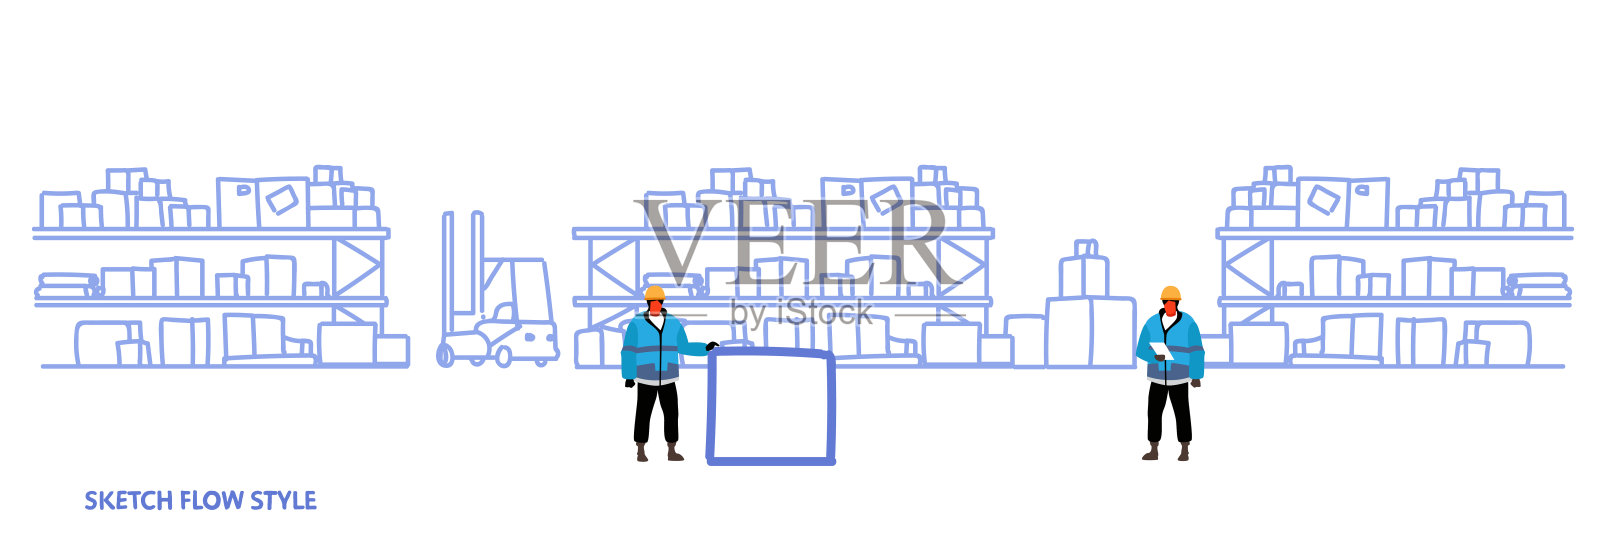 工人在统一的仓储物流配送服务概念货架与纸箱仓库内部草图流动风格横旗插画图片素材